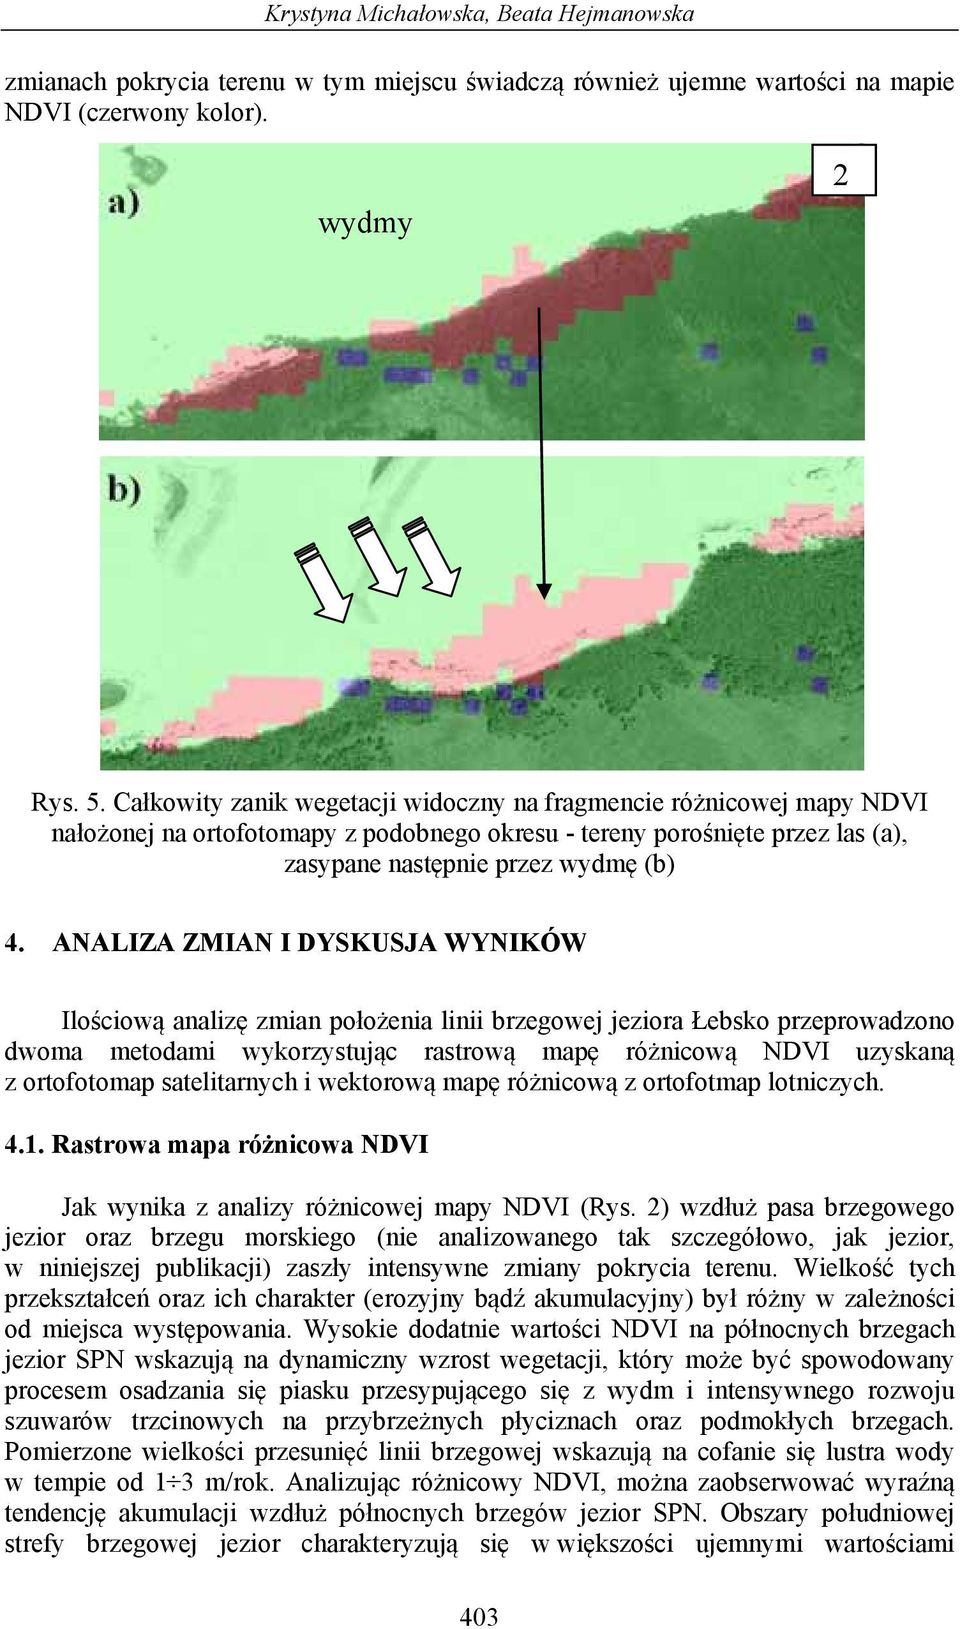 ANALIZA ZMIAN I DYSKUSJA WYNIKÓW Ilościową analizę zmian położenia linii brzegowej jeziora Łebsko przeprowadzono dwoma metodami wykorzystując rastrową mapę różnicową NDVI uzyskaną z ortofotomap